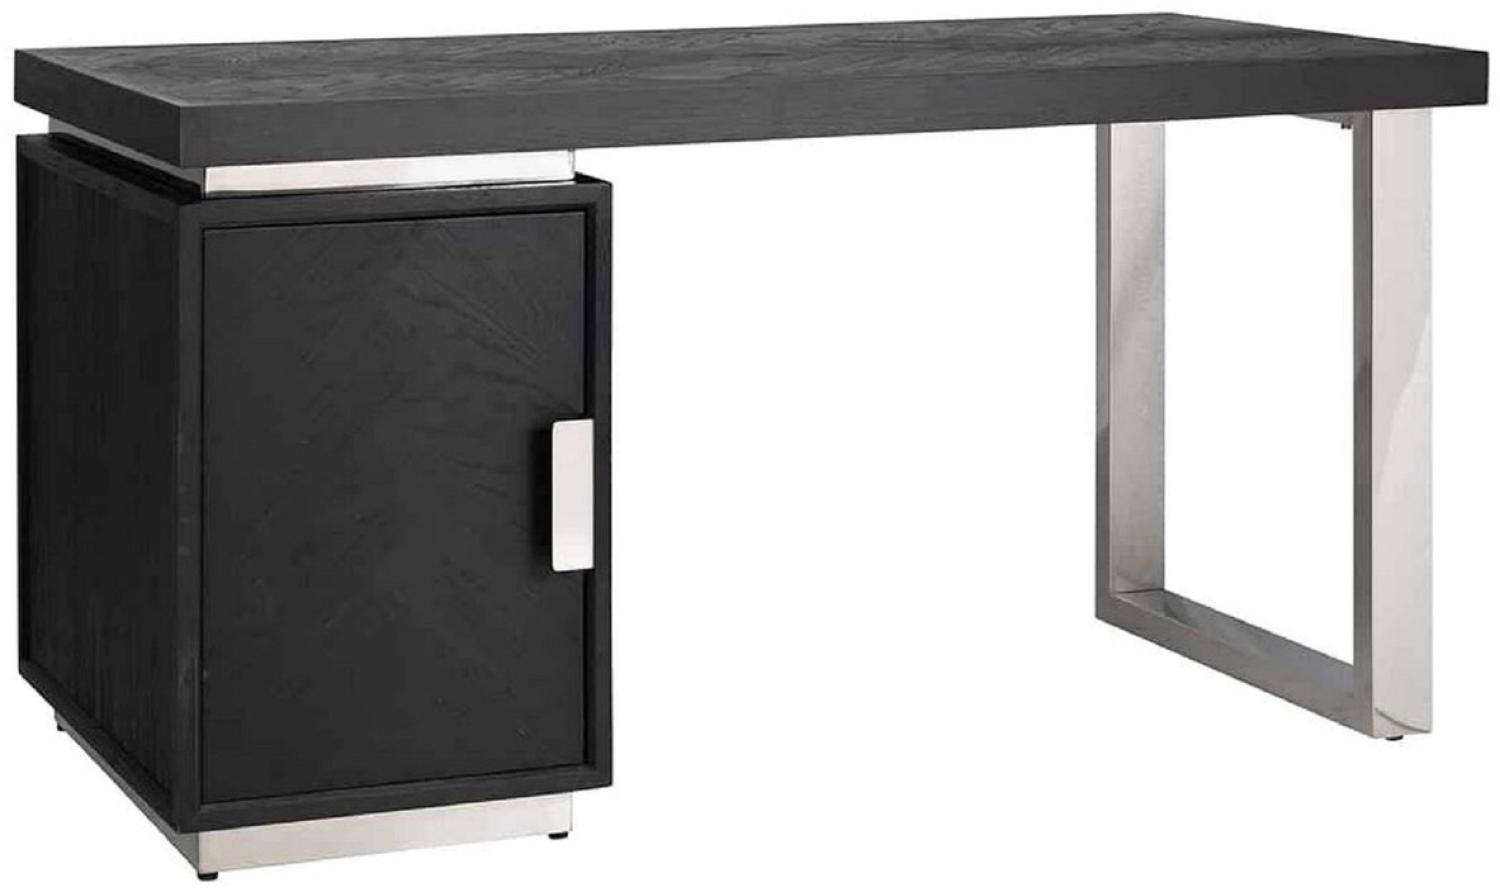 Casa Padrino Luxus Massivholz Schreibtisch Schwarz / Silber 150 x 70 x H. 77 cm - Bürotisch - Computertisch - Luxus Büro Möbel Bild 1